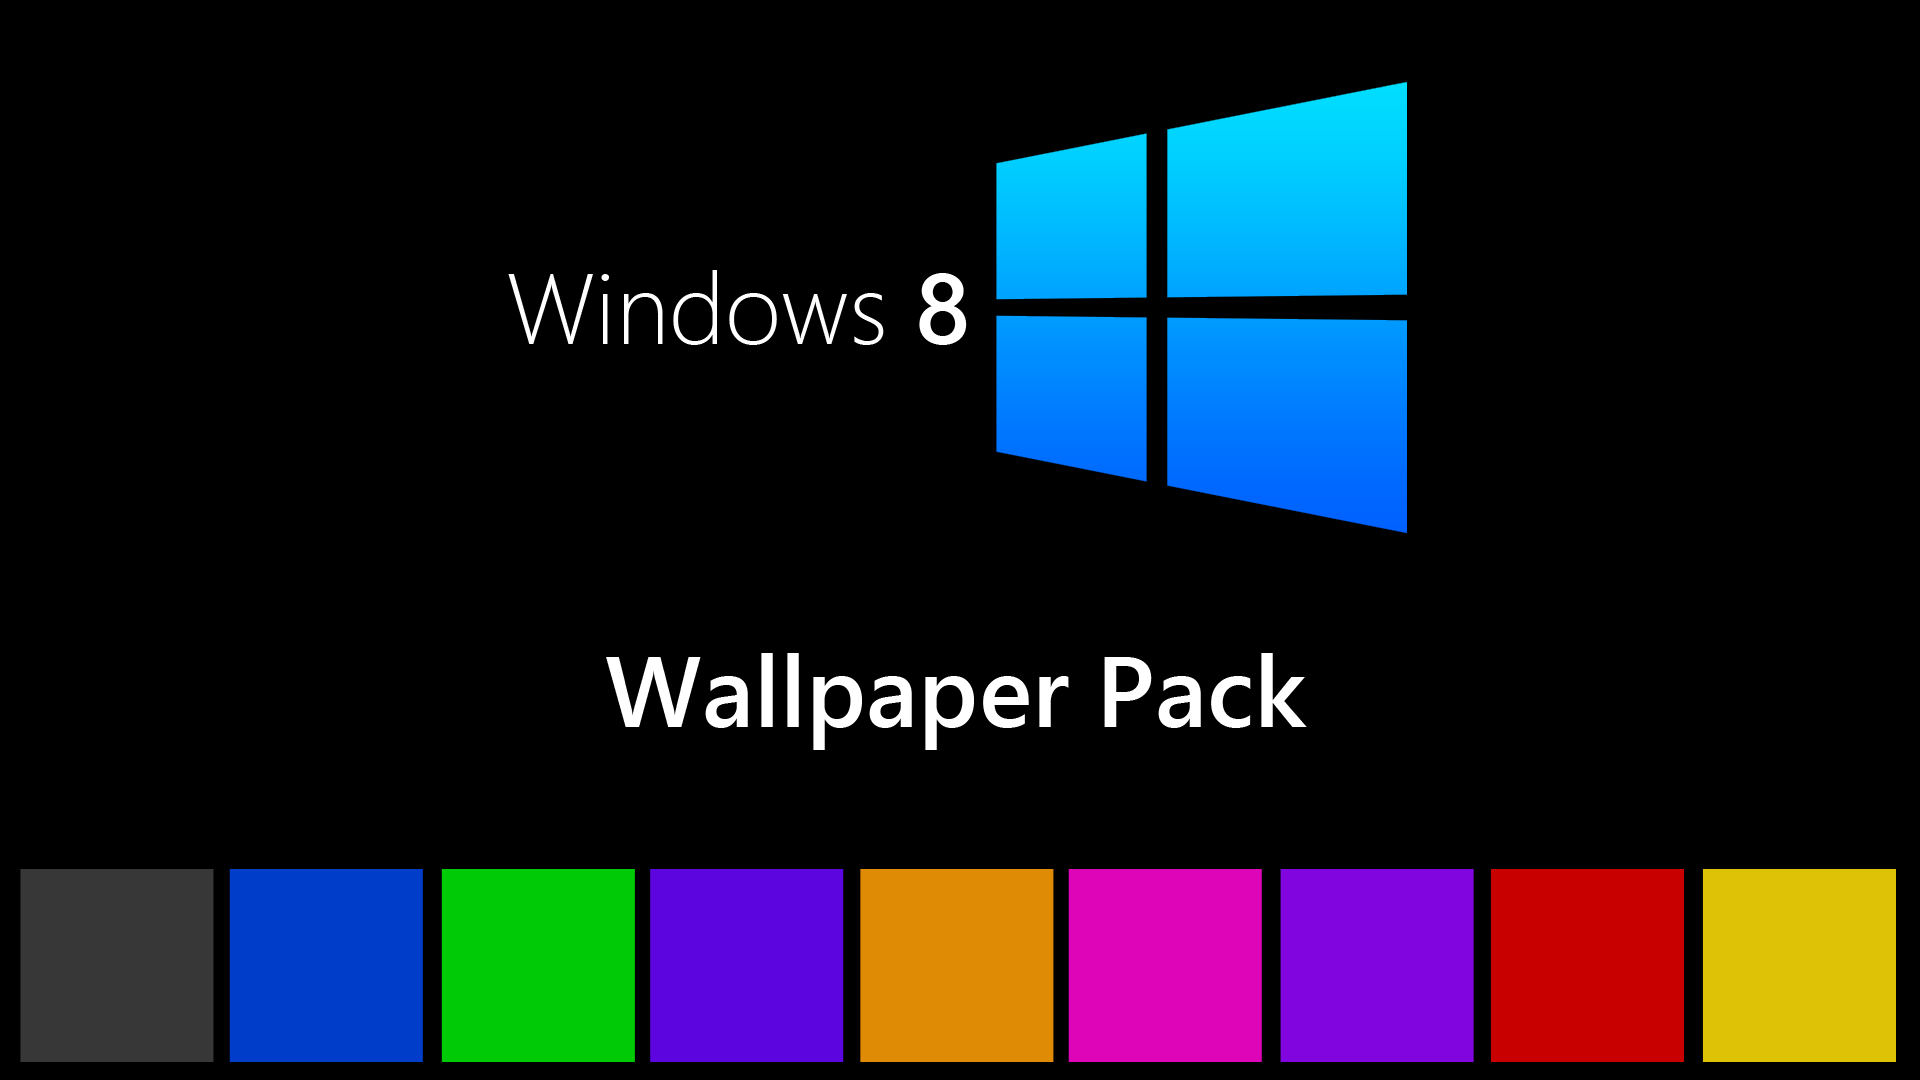 Windows 8 Wallpaper Pack by Ech064 on DeviantArt